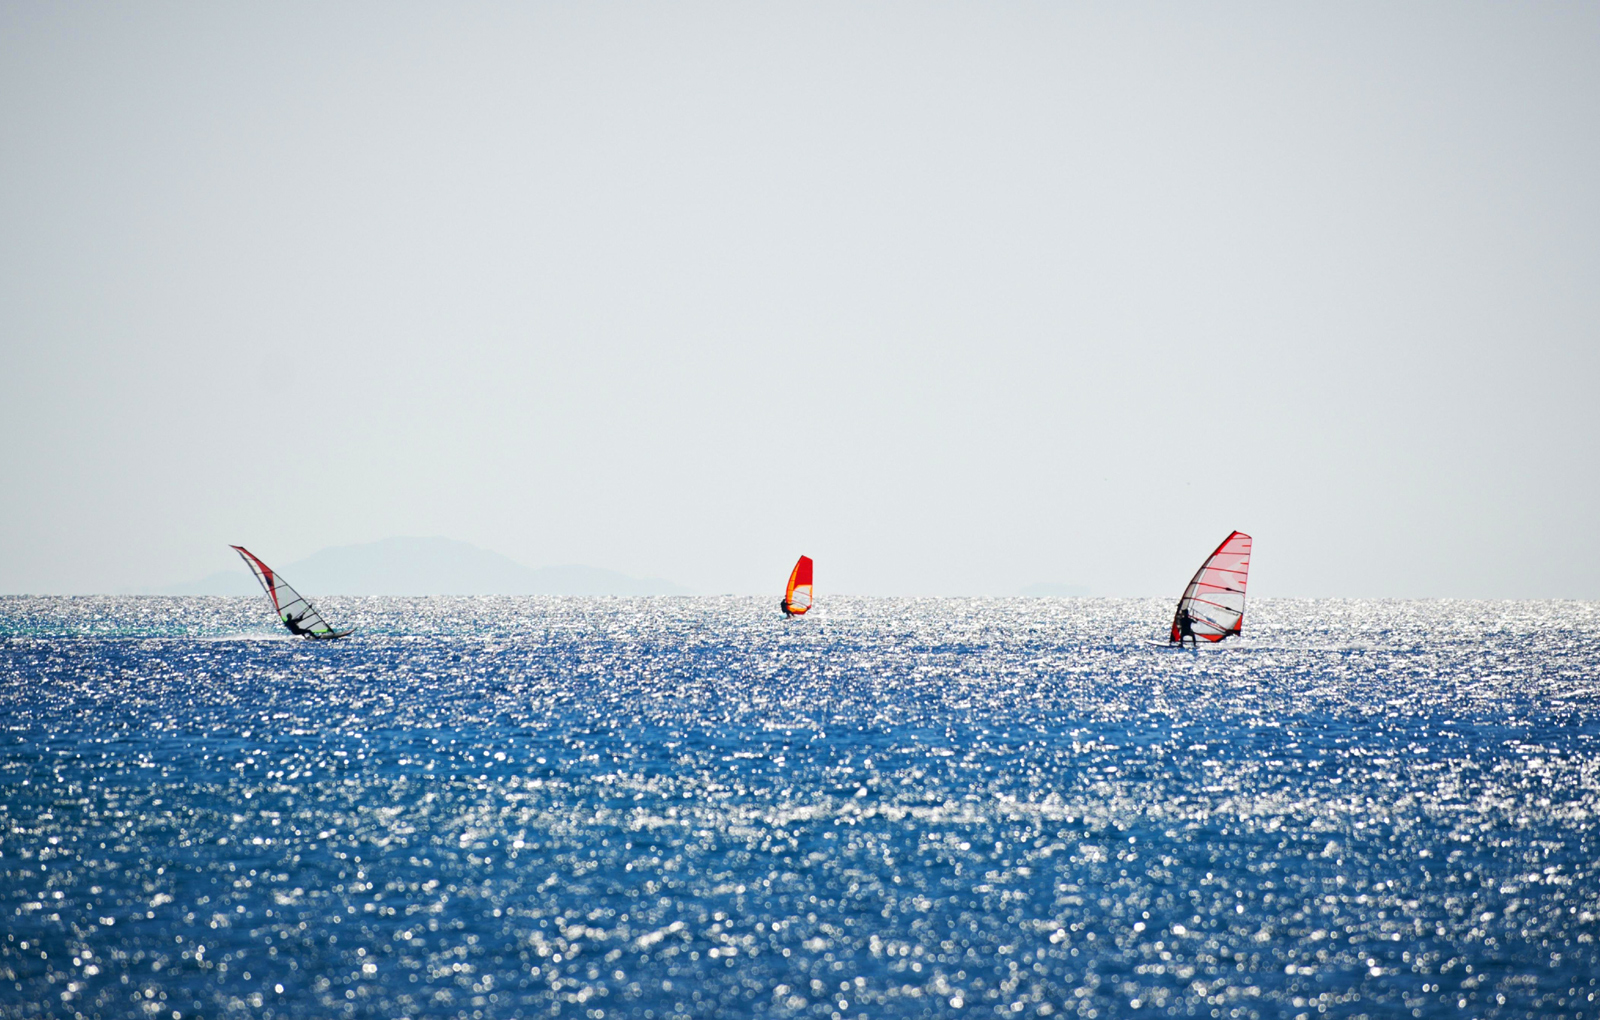 Polis - Paphos Windsurfing- Kitesurfing